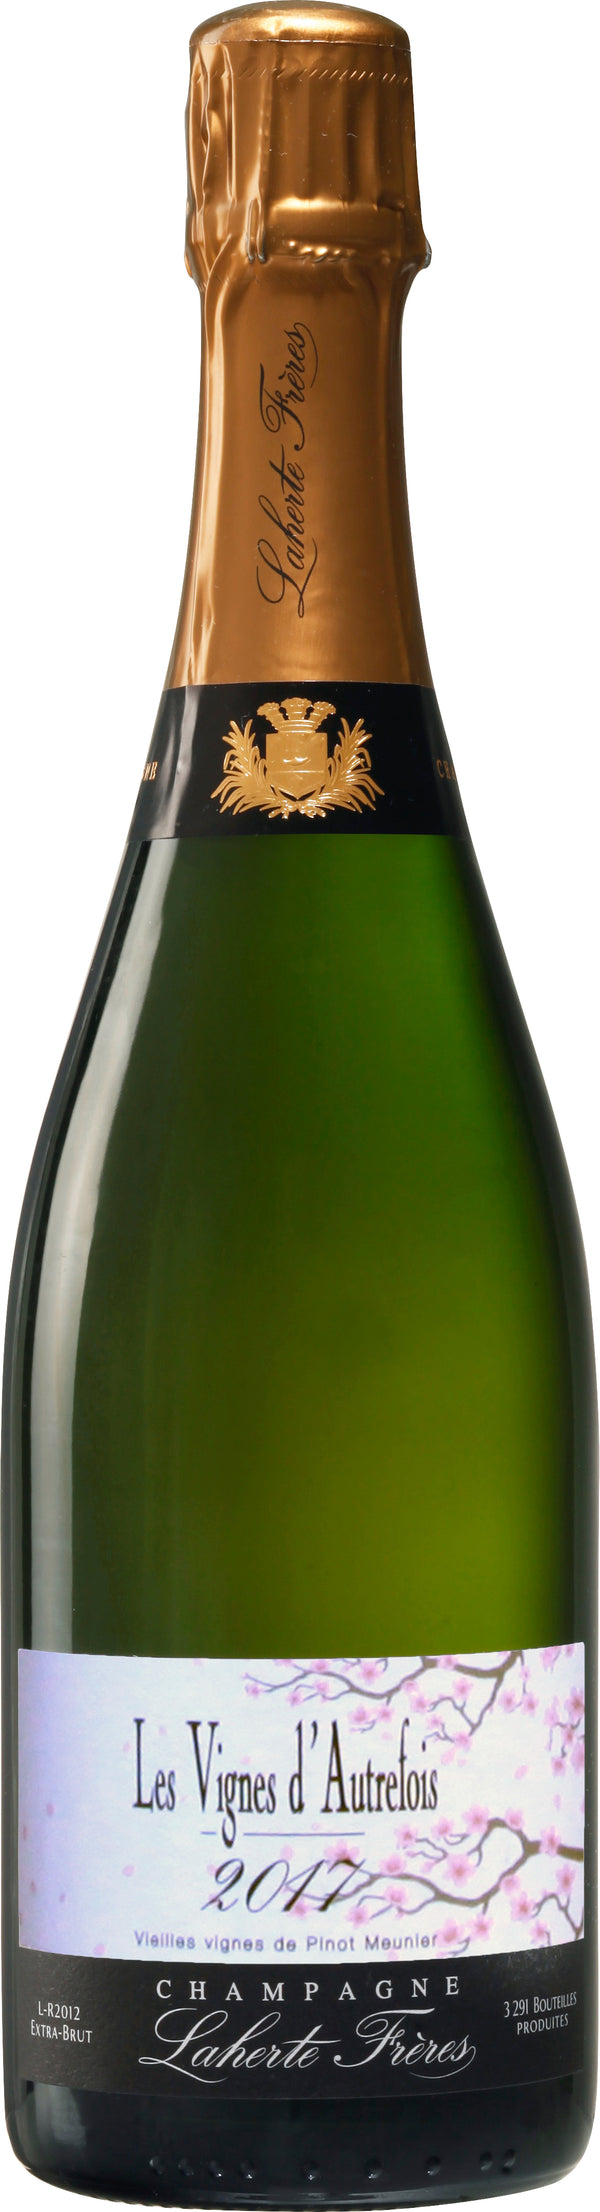 Champagne Laherte Frères Les Vignes d'Autrefois 2017 (Disg. May 2021)